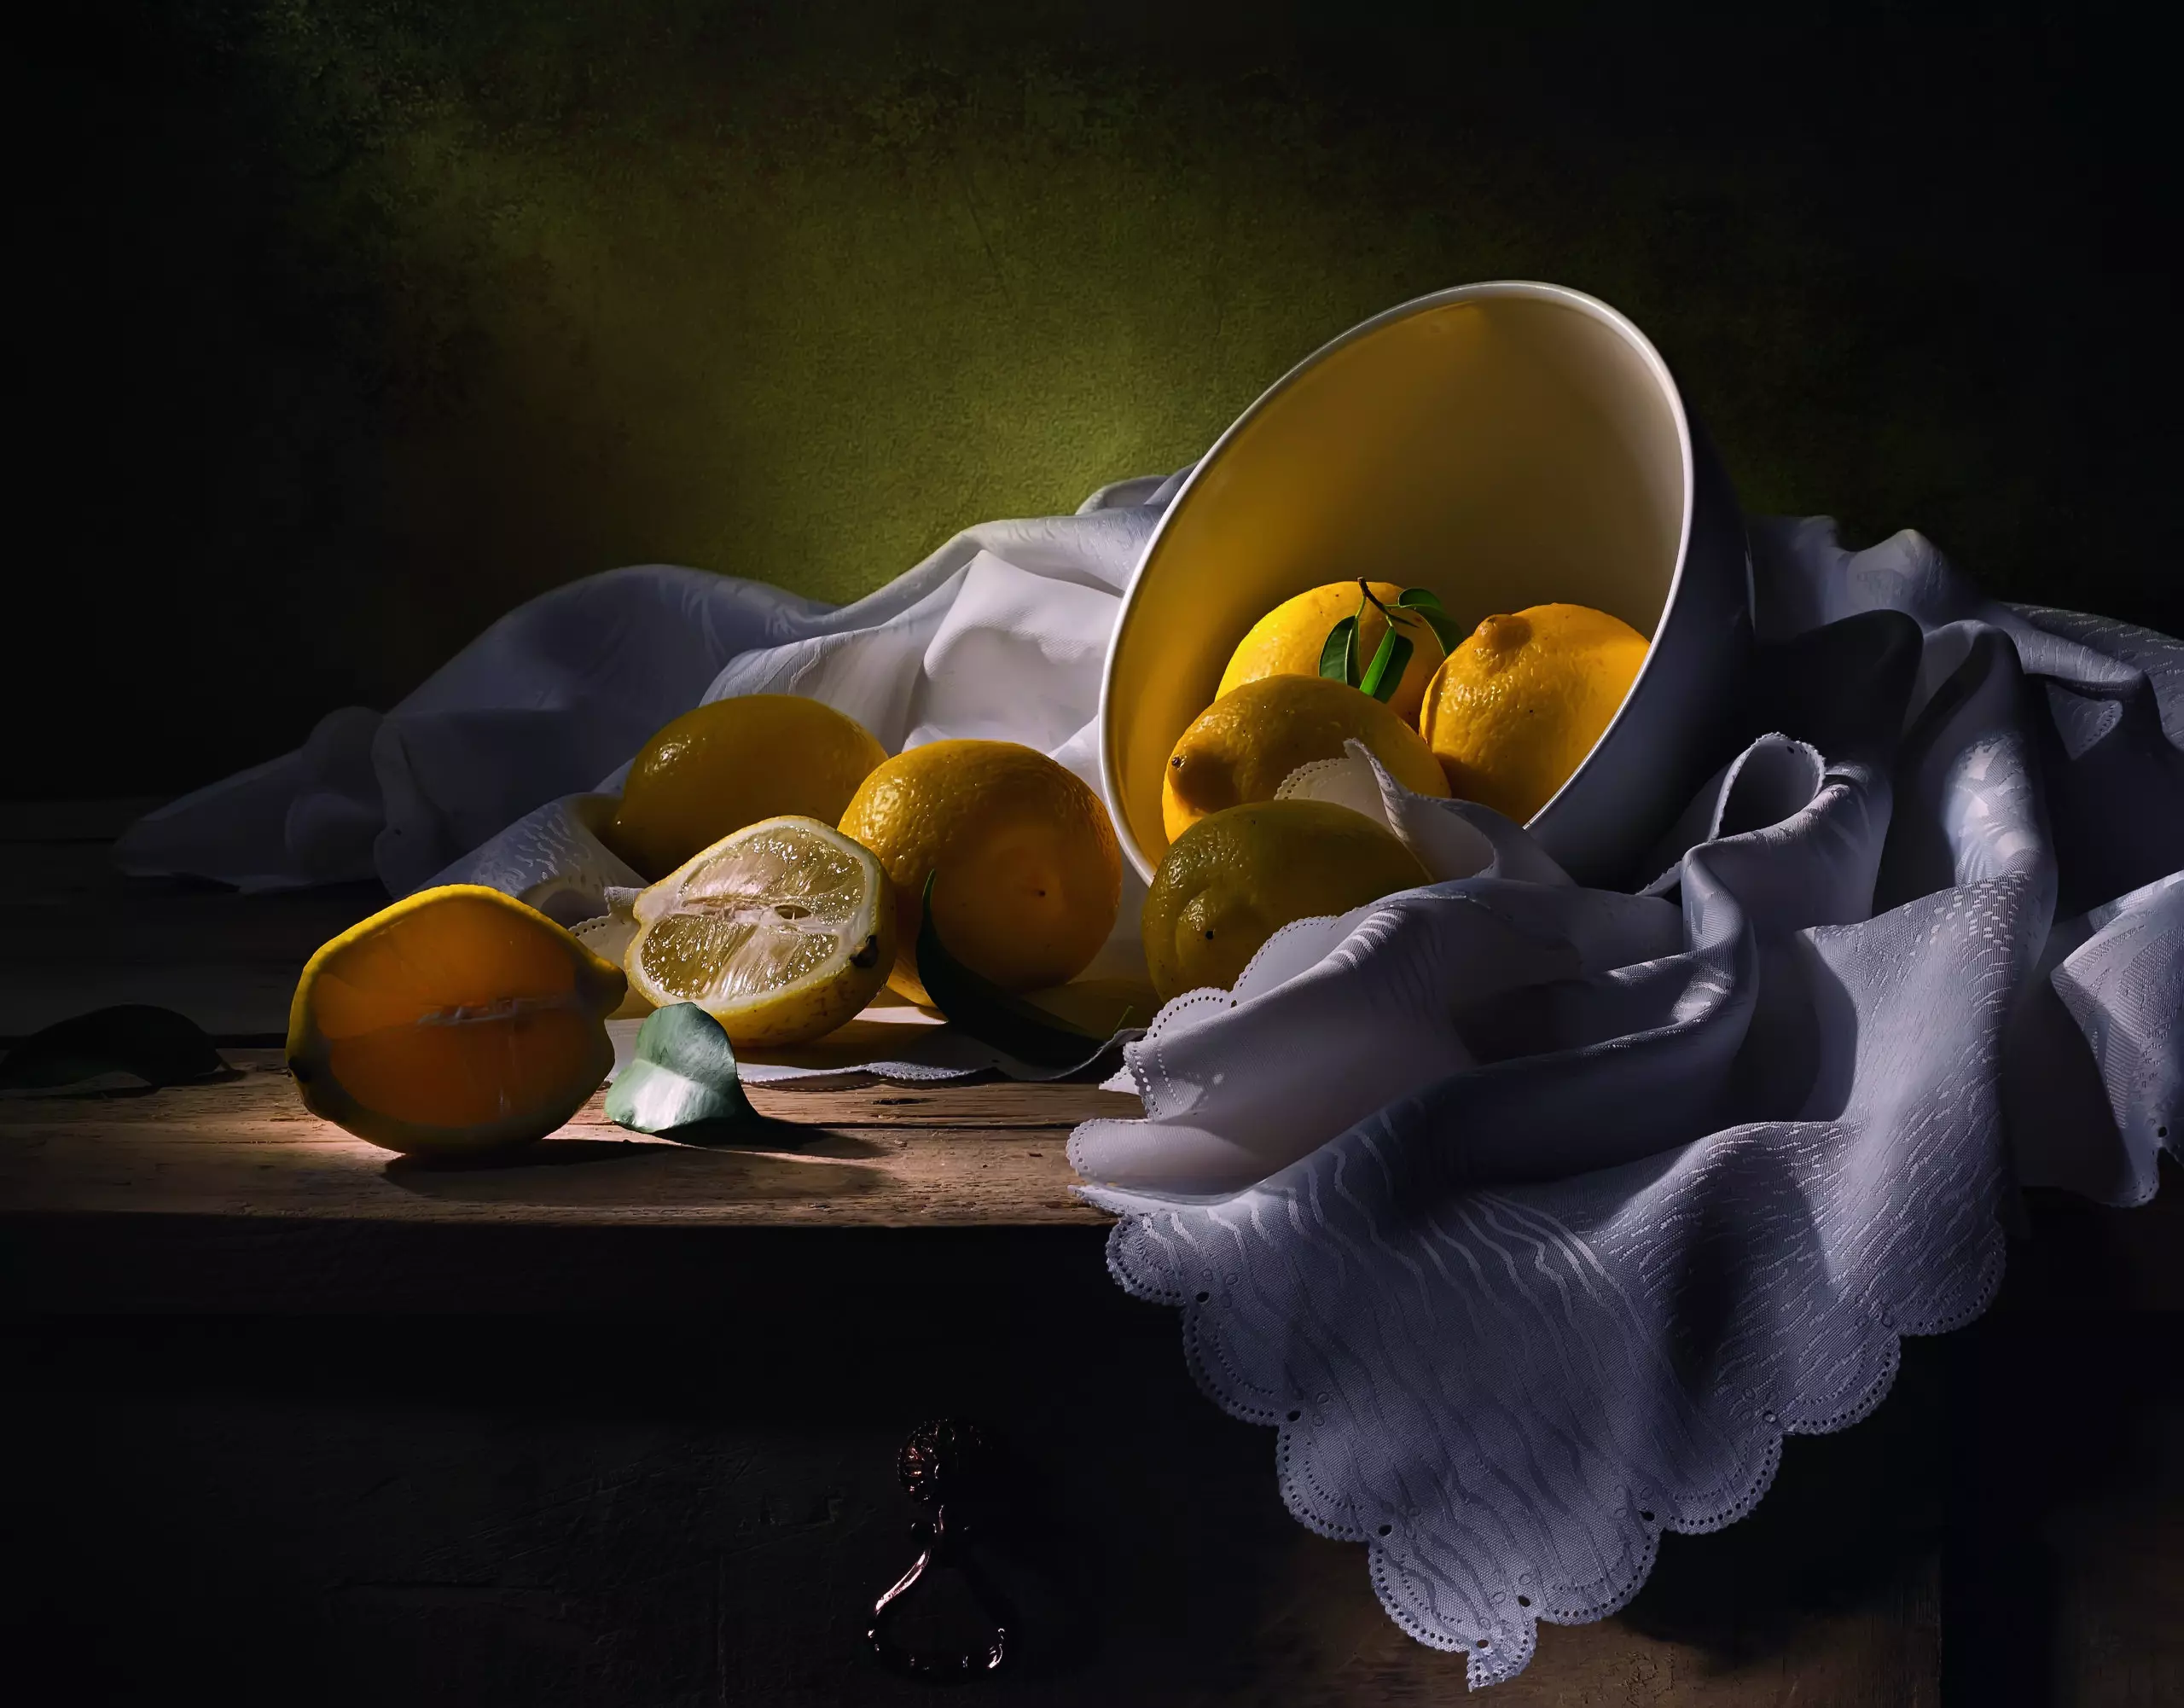 Wandbild (5226) Still life with lemons by Svetlana L präsentiert: Stillleben,Kreatives,Details und Strukturen,Essen und Getränke,Retro,Sonstiges Kreatives